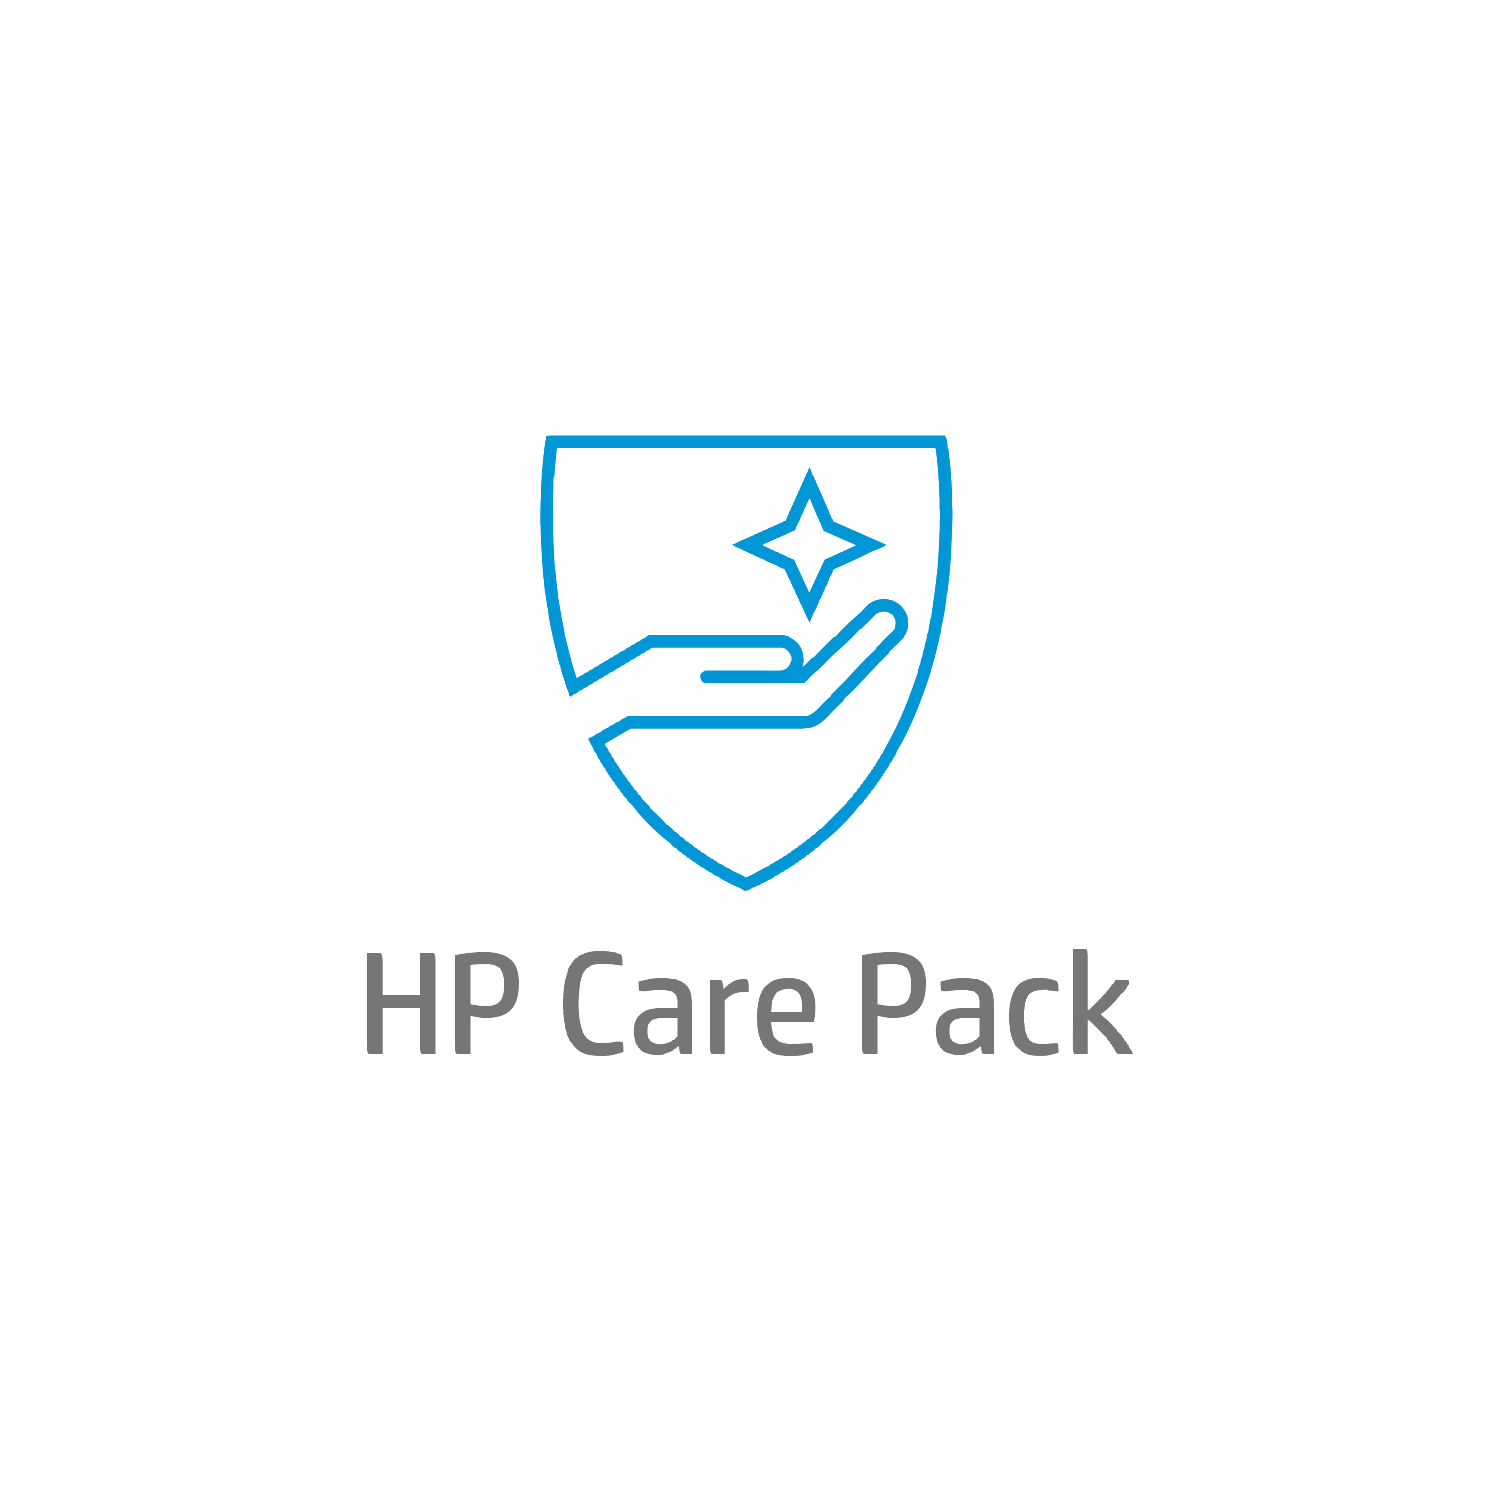 Bild von HP Care 1 Jahr Hardware-Support nach der Garantiezeit für Mobile Workstations, Active Care, Remote und vor Ort, Nach Garantieablauf, Standardarbeitstage - 9 Stunden, 1 Jahr, Reaktion am nächsten Arbeitstag